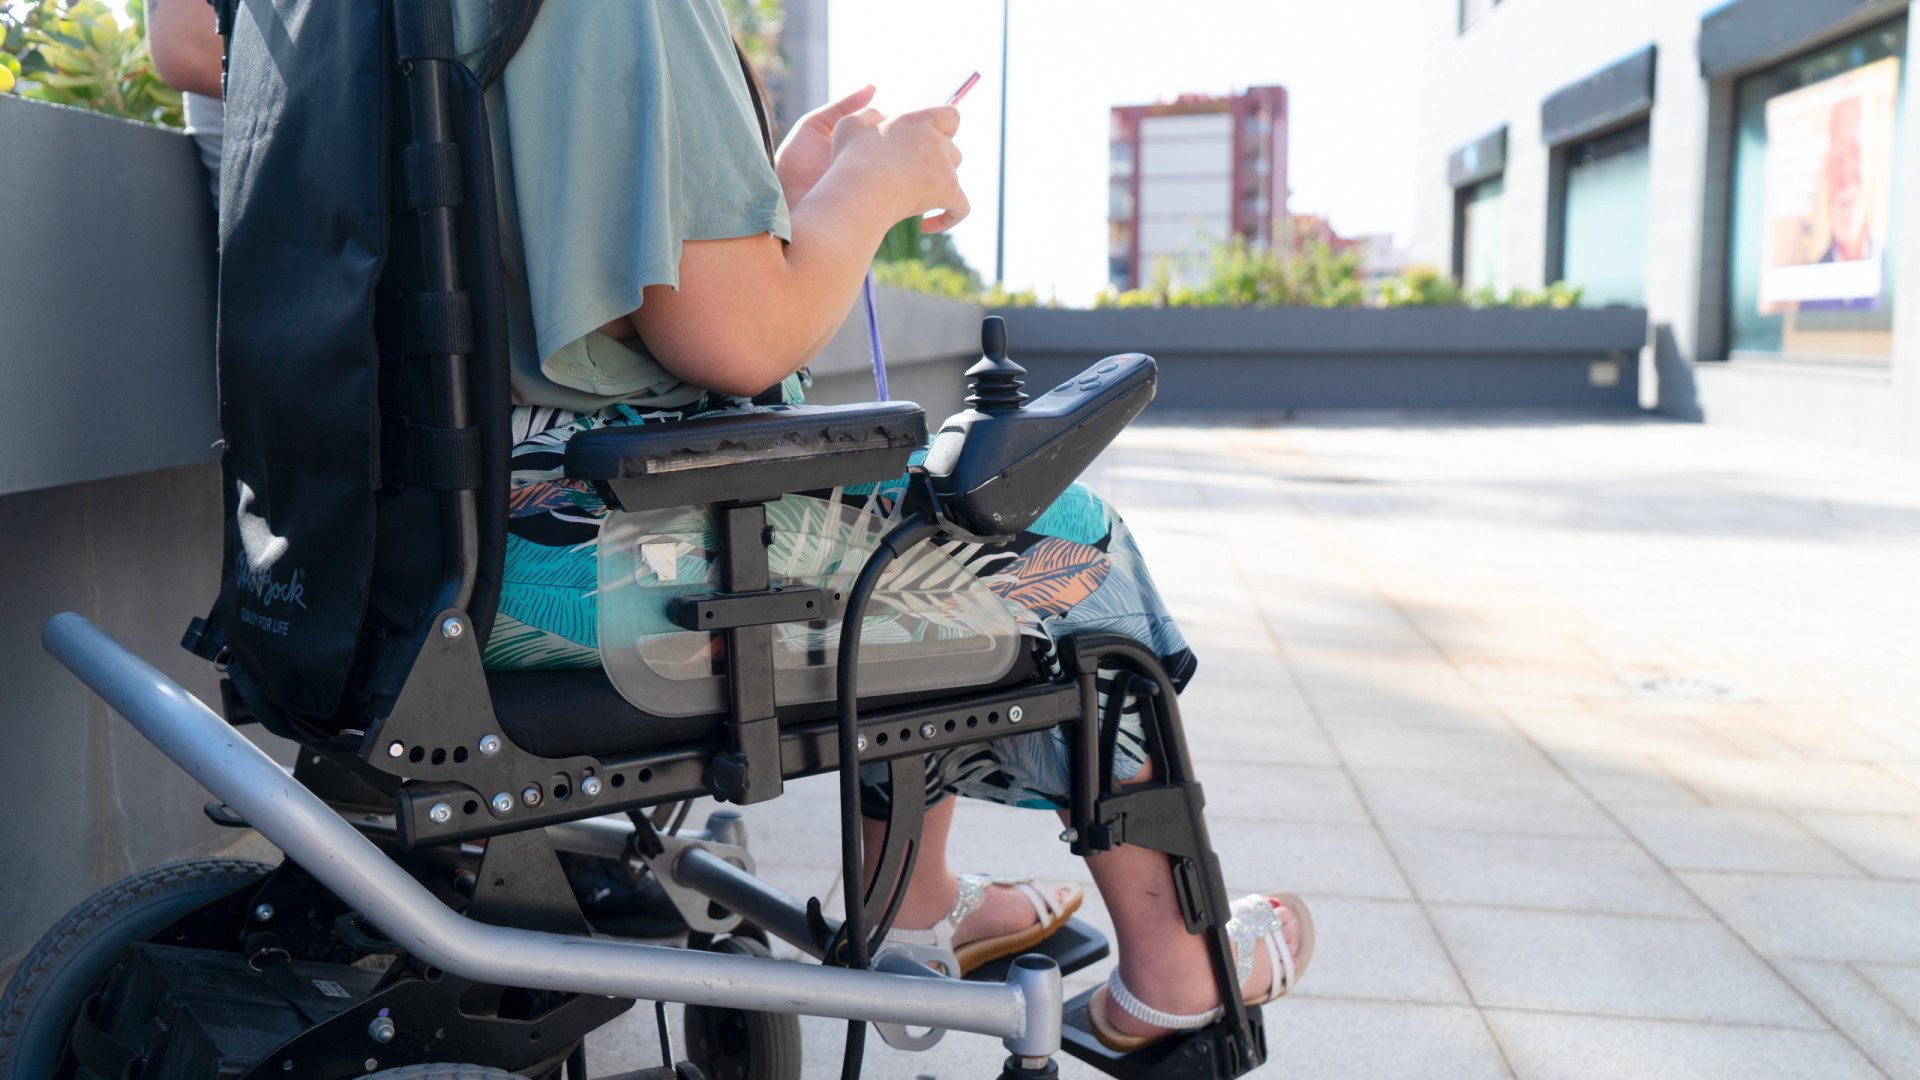 Tetraplégicos aprendem a controlar cadeira de rodas com pensamento, mostra pesquisa